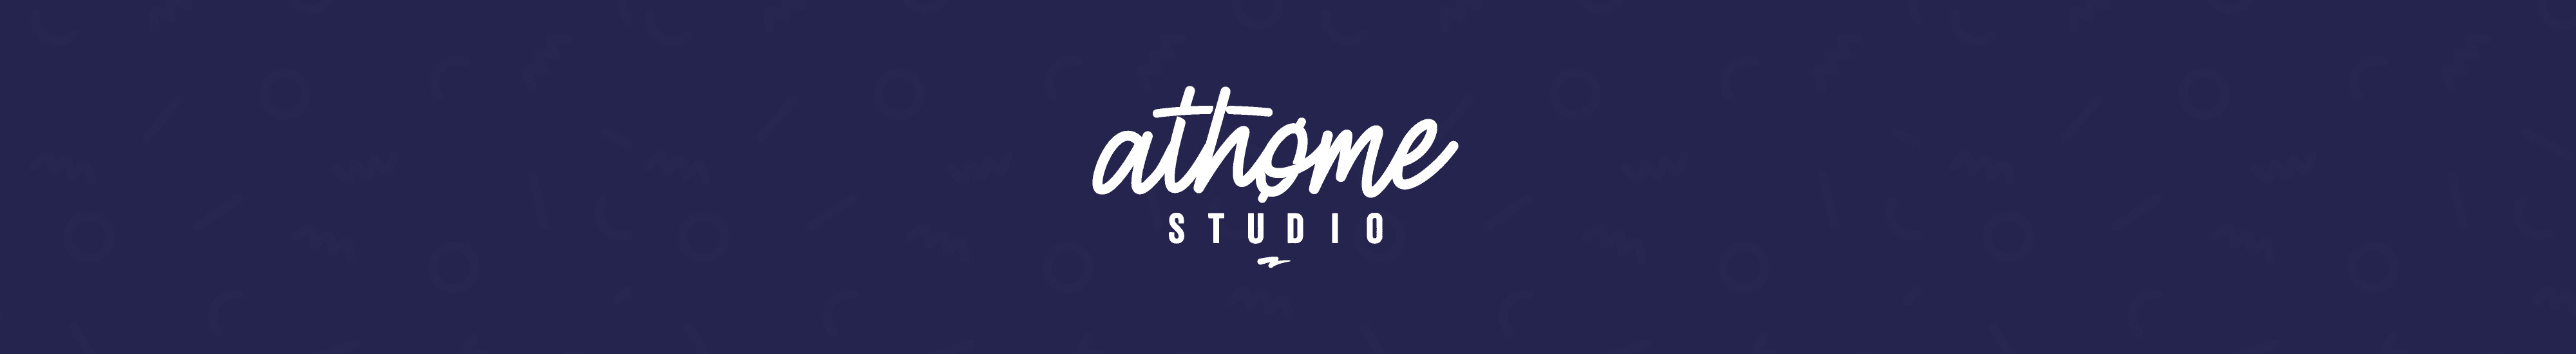 Athome Studio's profile banner